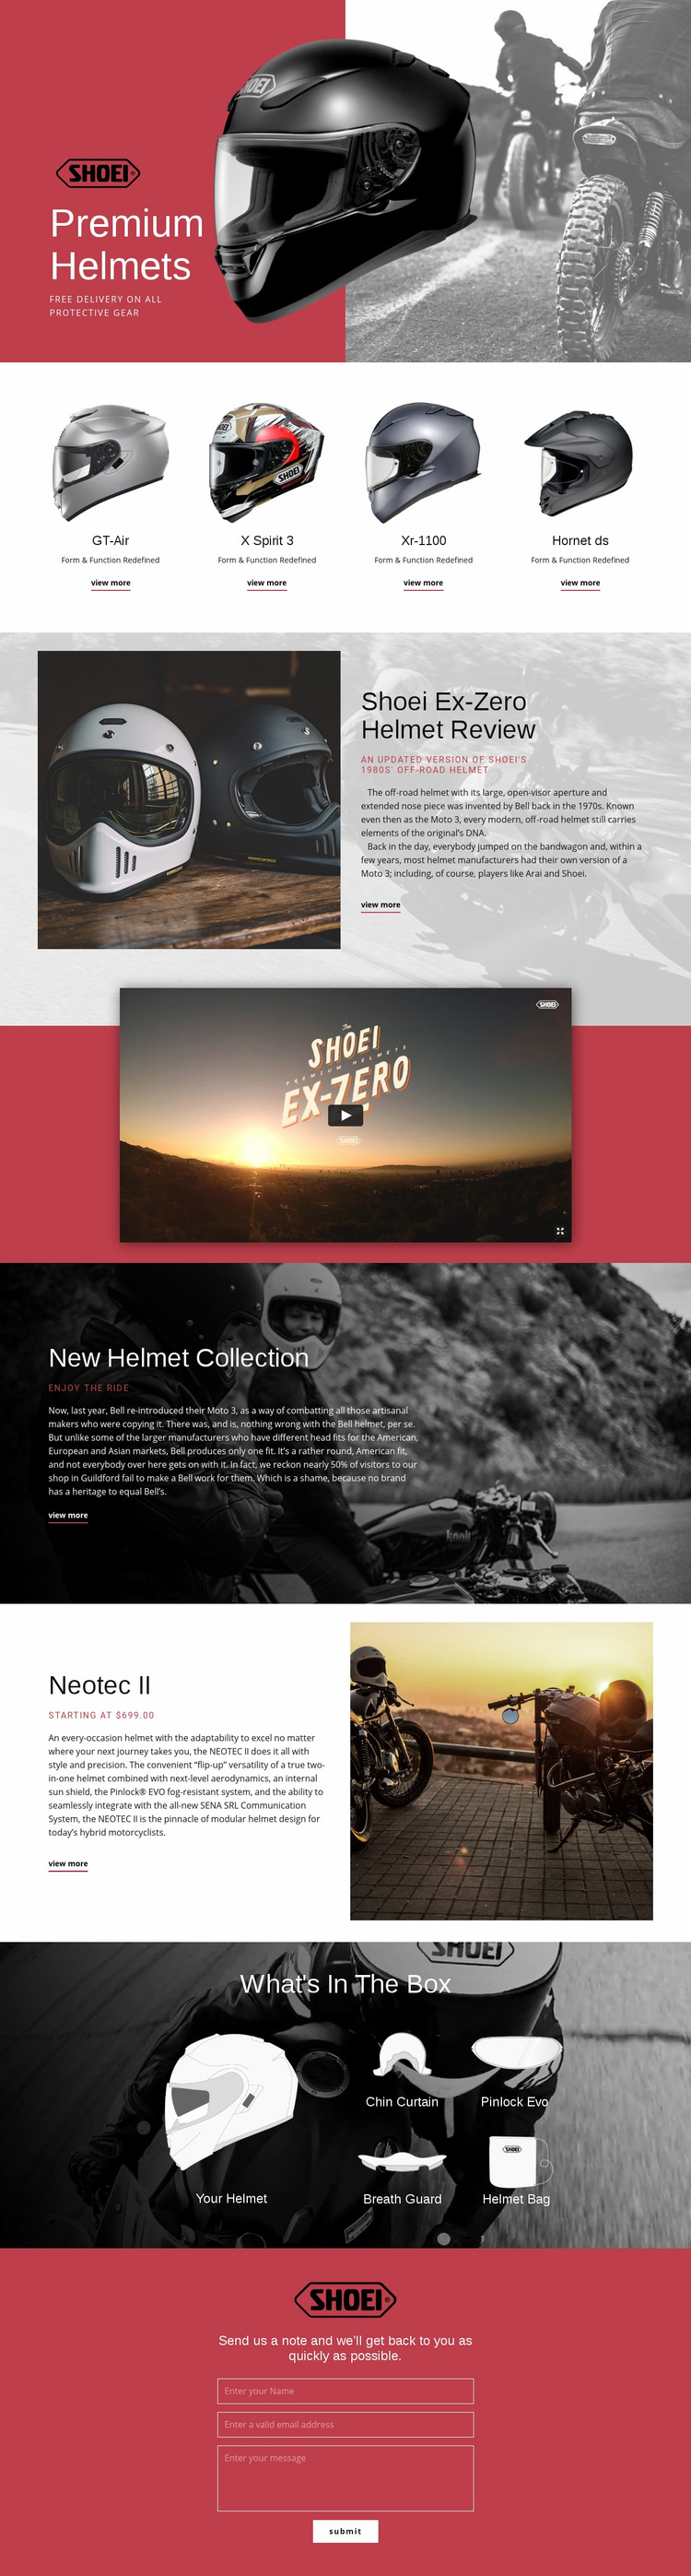 Premium Helmets Web Page Design